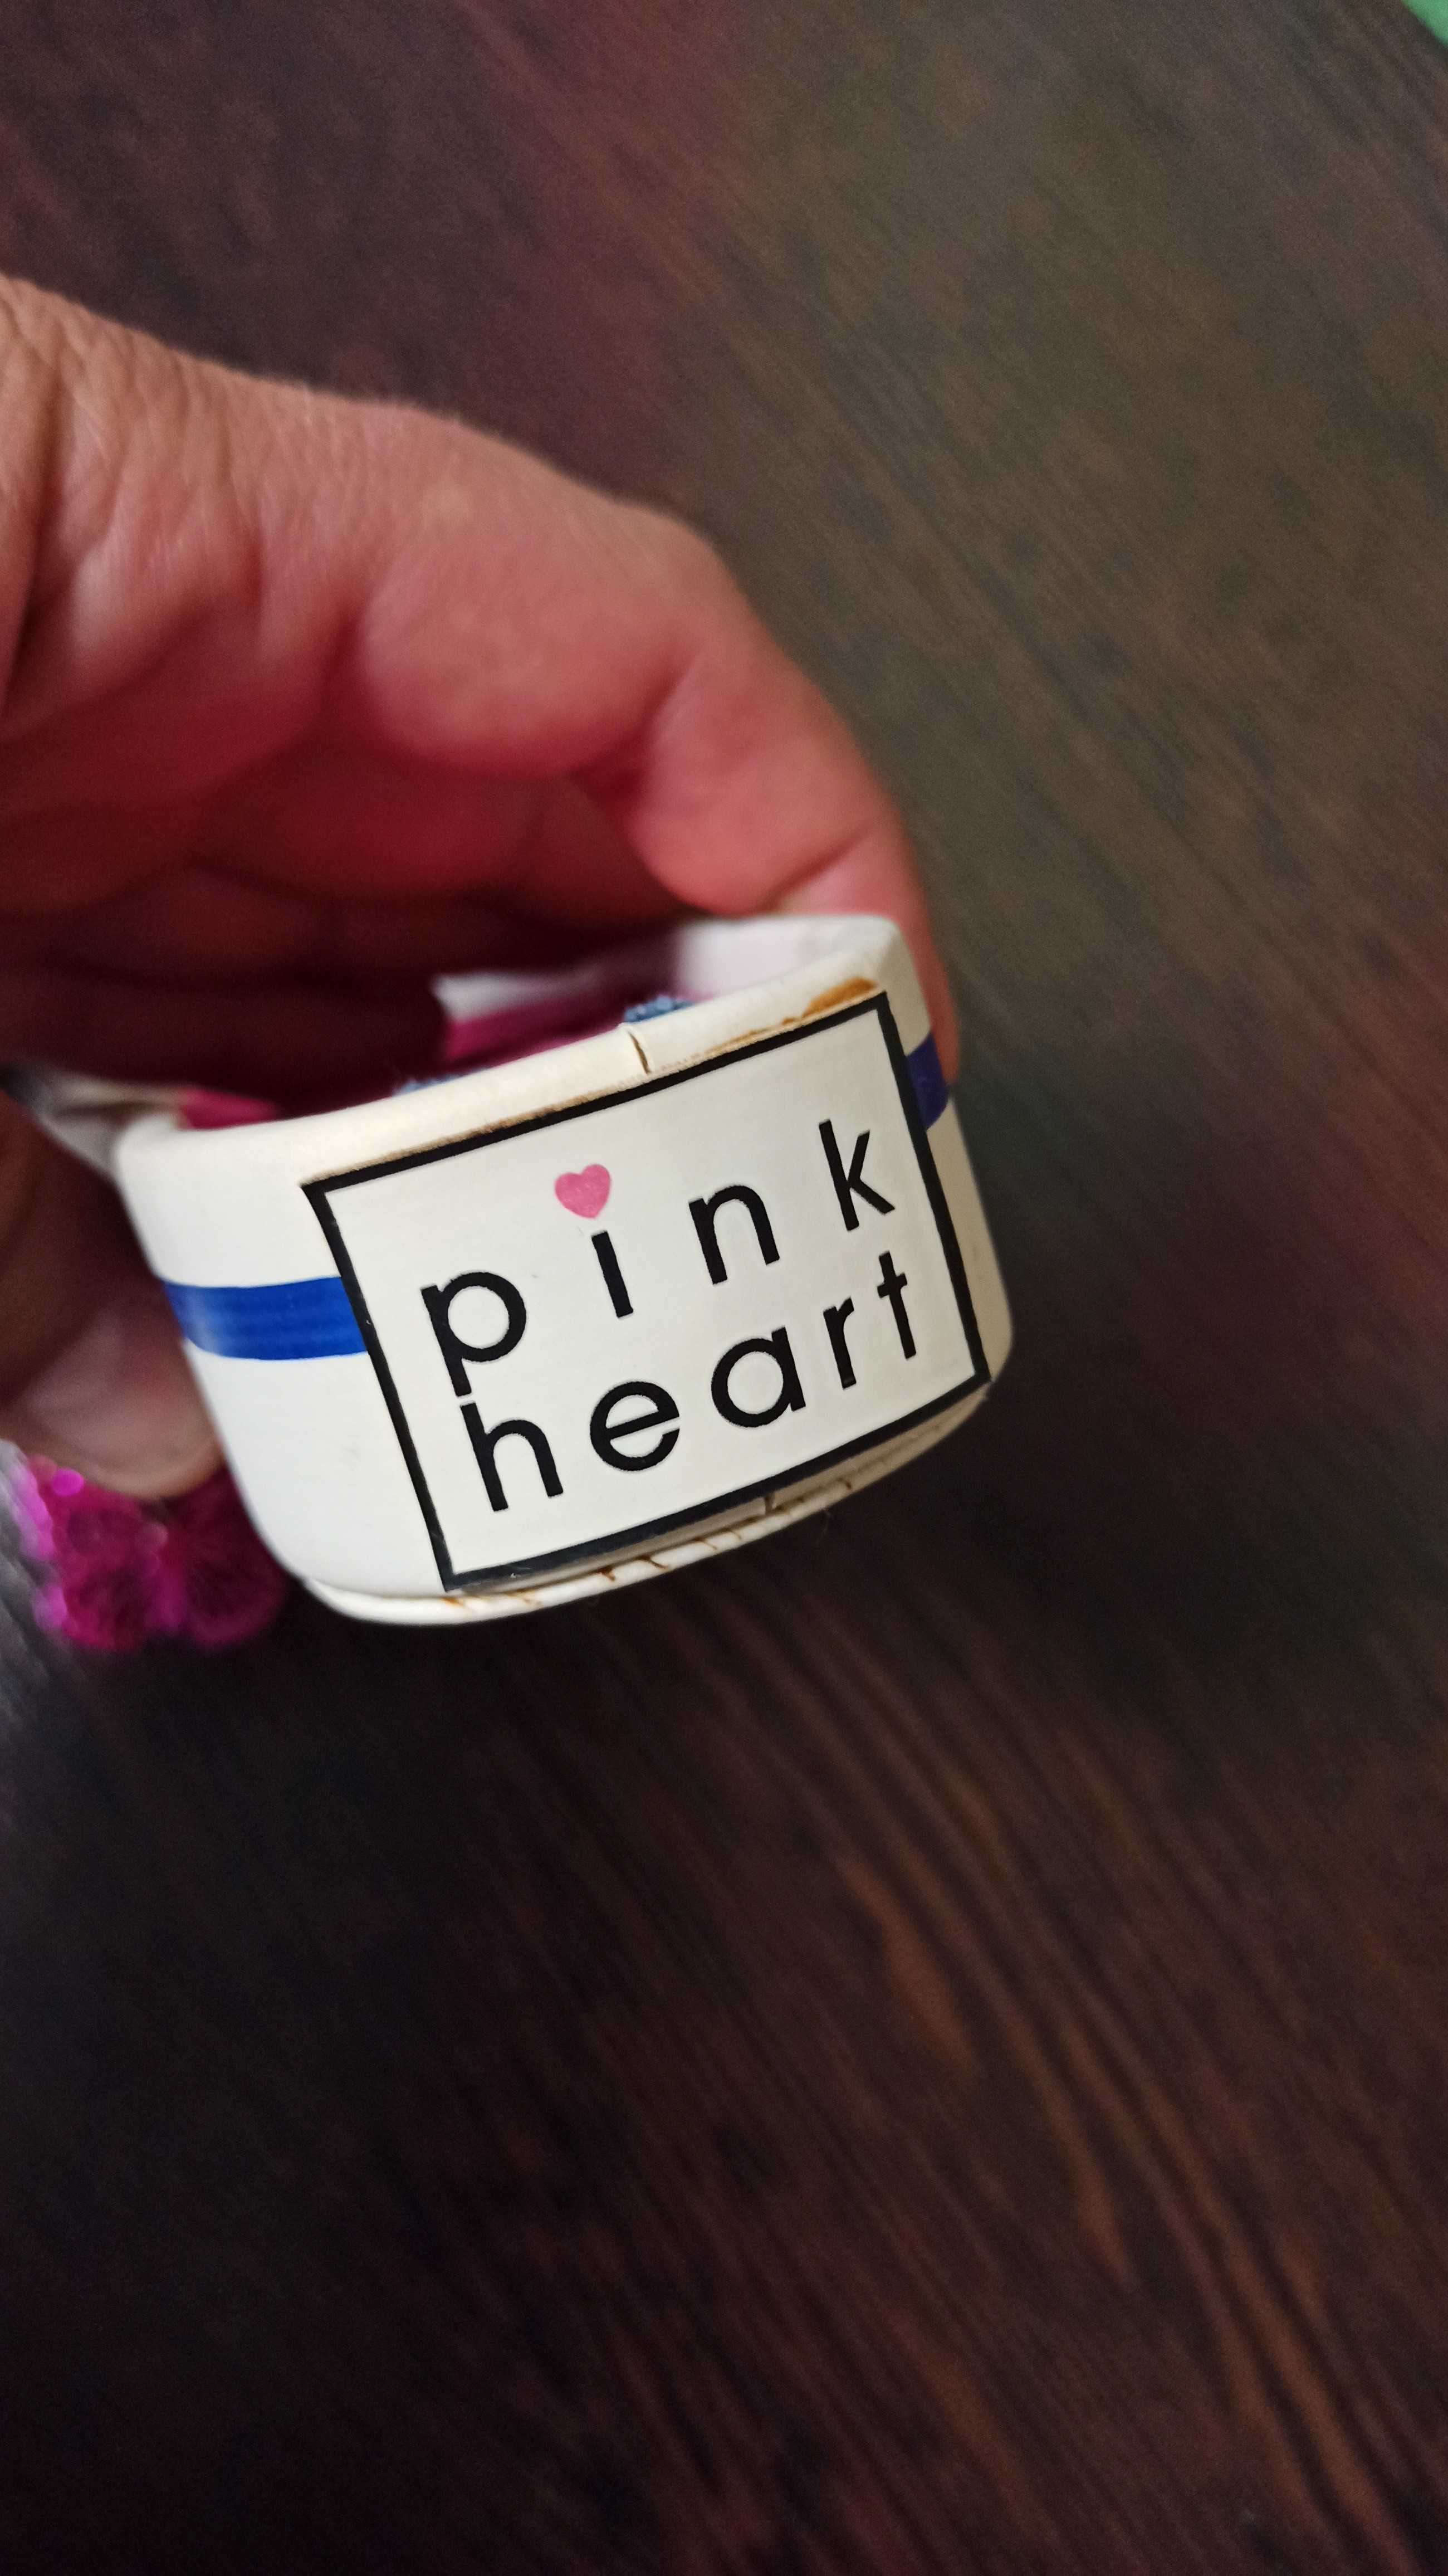 Эксклюзивная шкатулка pink heart в виде тапка, кроссовка.